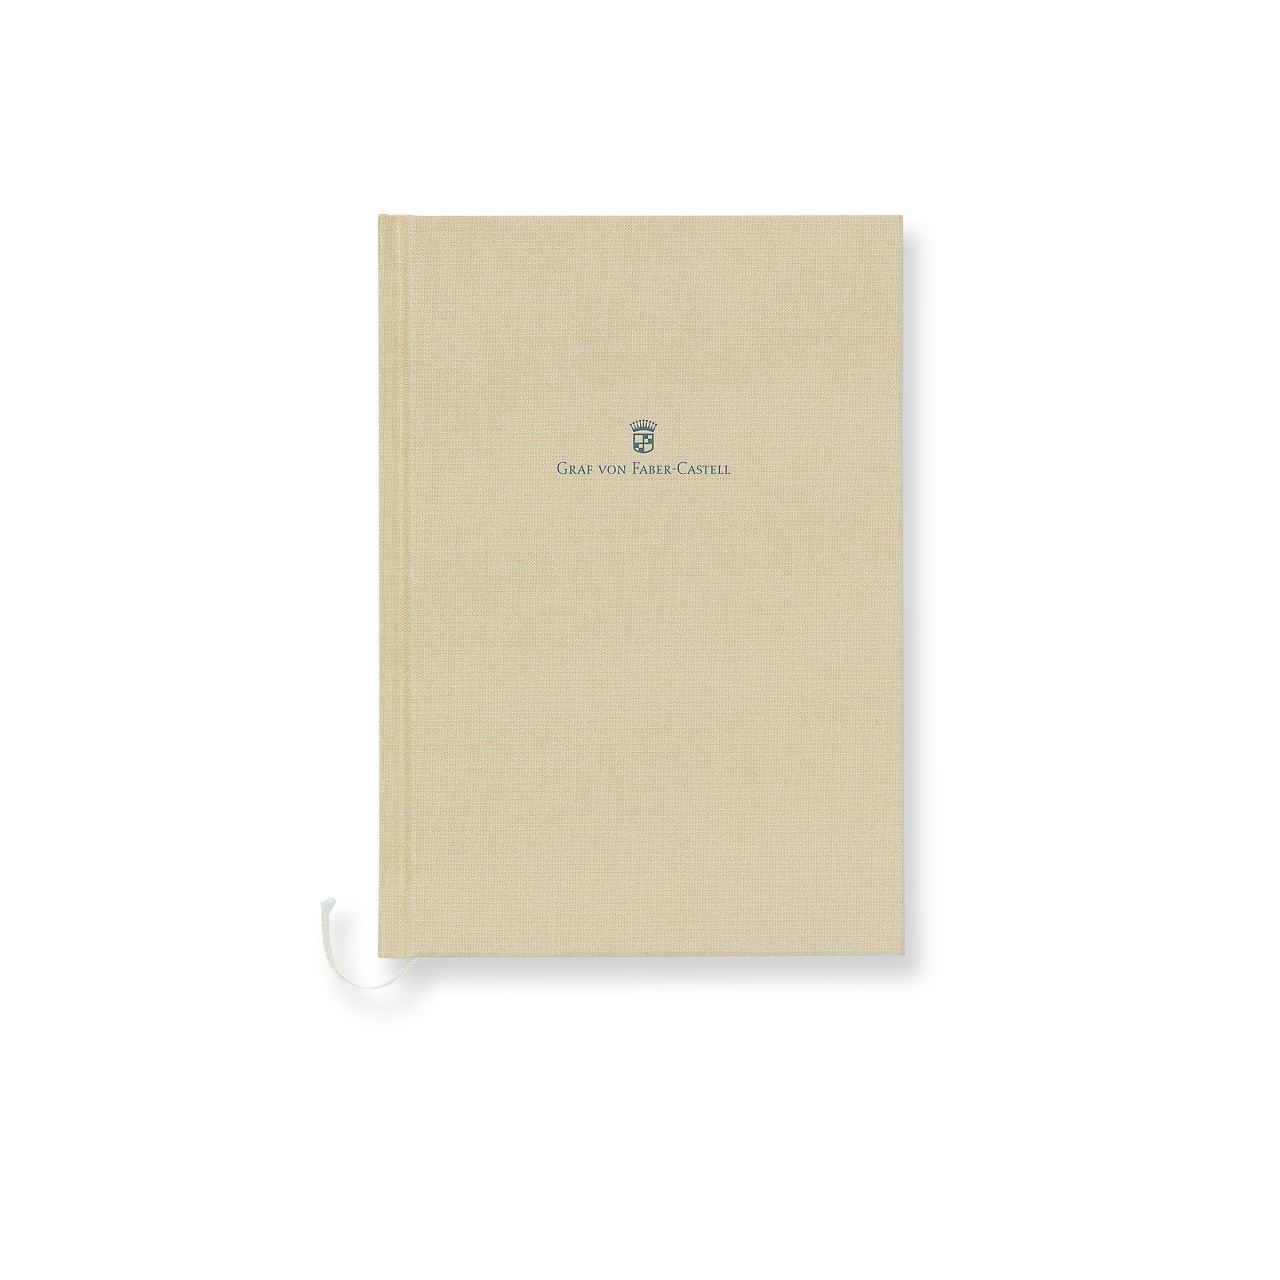 Graf-von-Faber-Castell - Caderno com capa de linho de tamanho A5, Marrom dourade